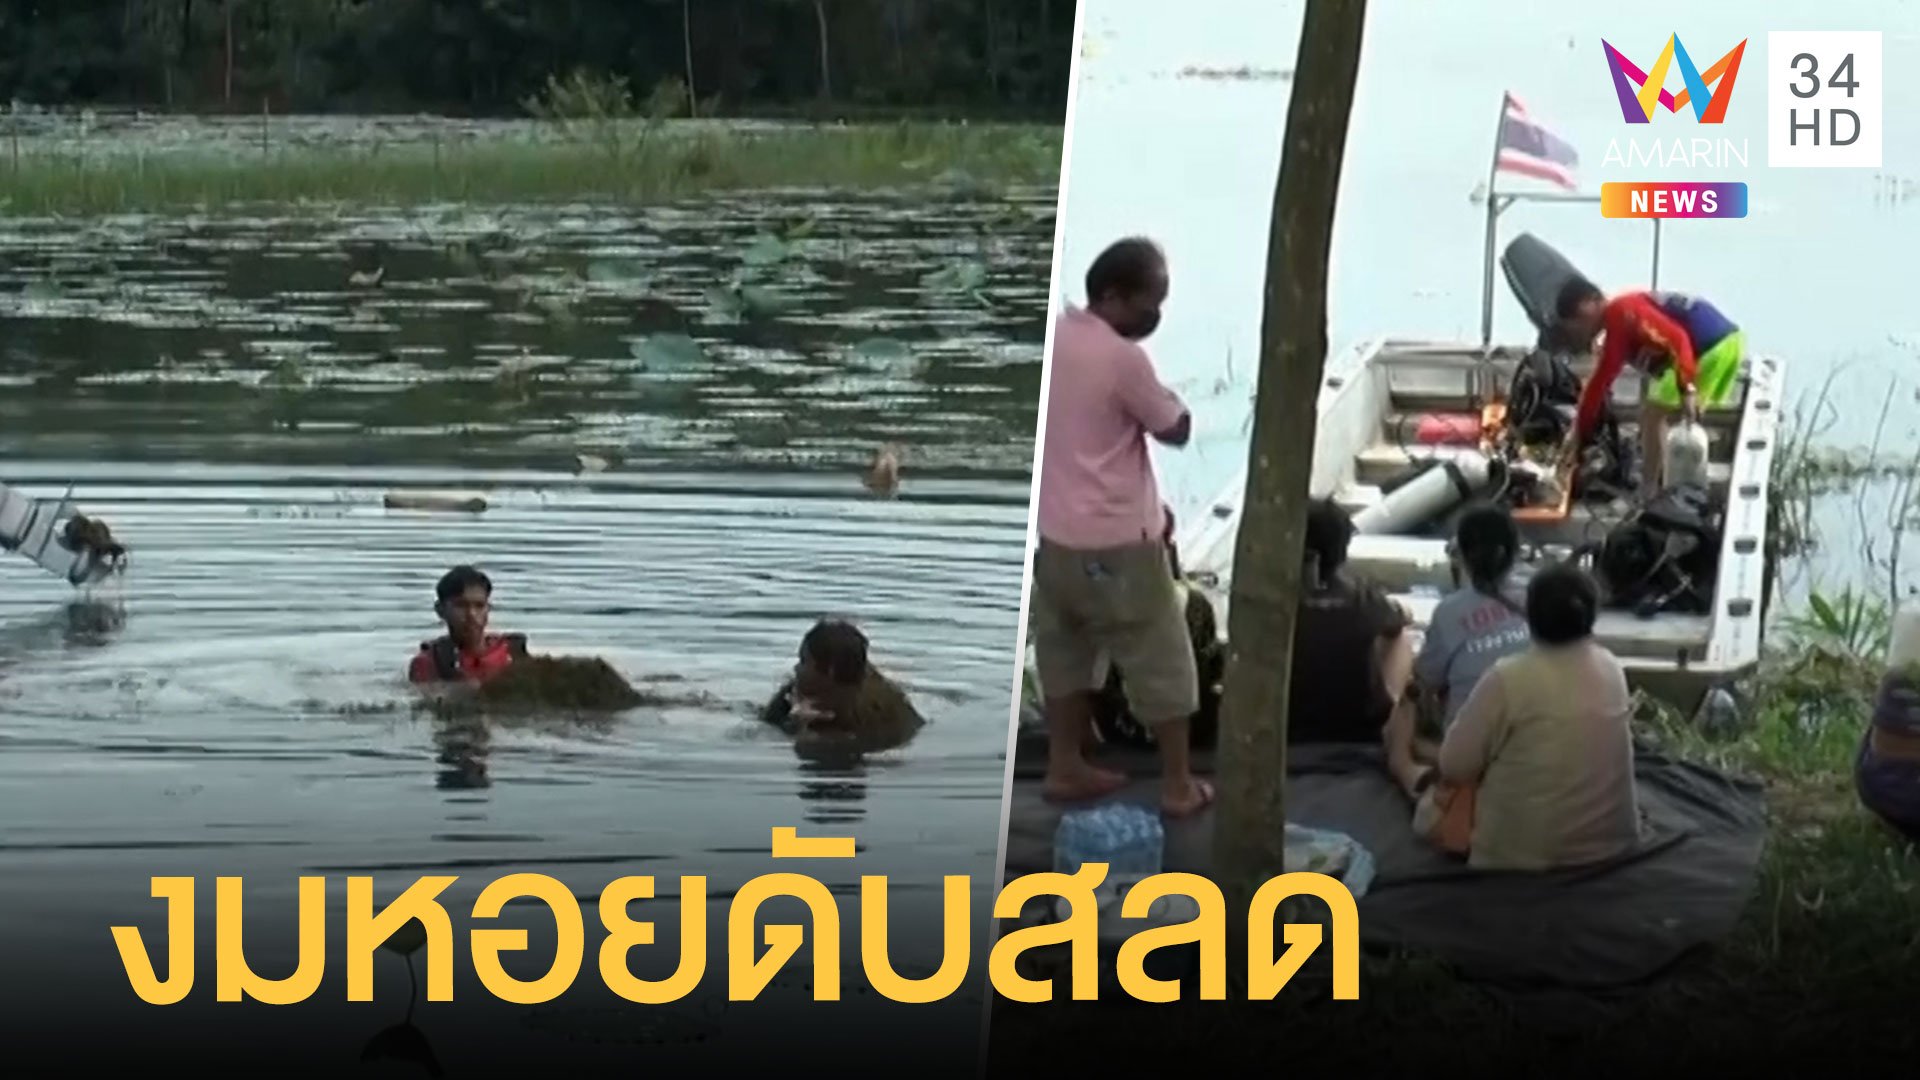 หนุ่มหาหอยเรือล่ม ว่ายน้ำไม่เป็นจมน้ำดับ  | ข่าวเที่ยงอมรินทร์ | 23 ก.ย. 64 | AMARIN TVHD34